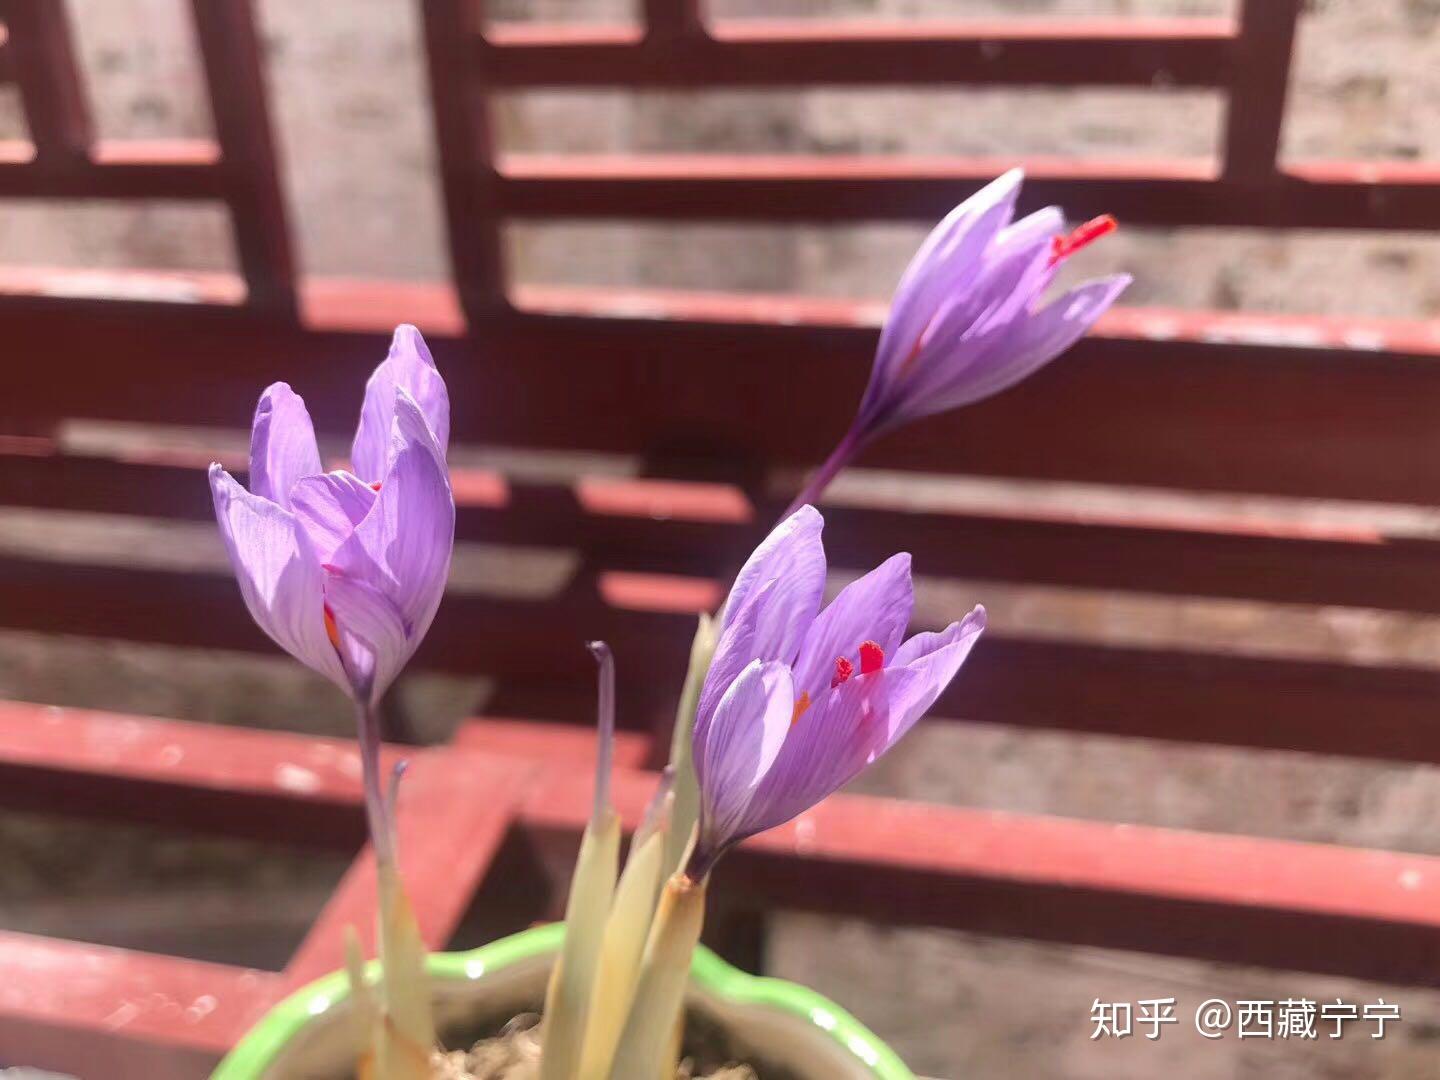 藏红花图片_藏红花的叶子图片大全 - 花卉网